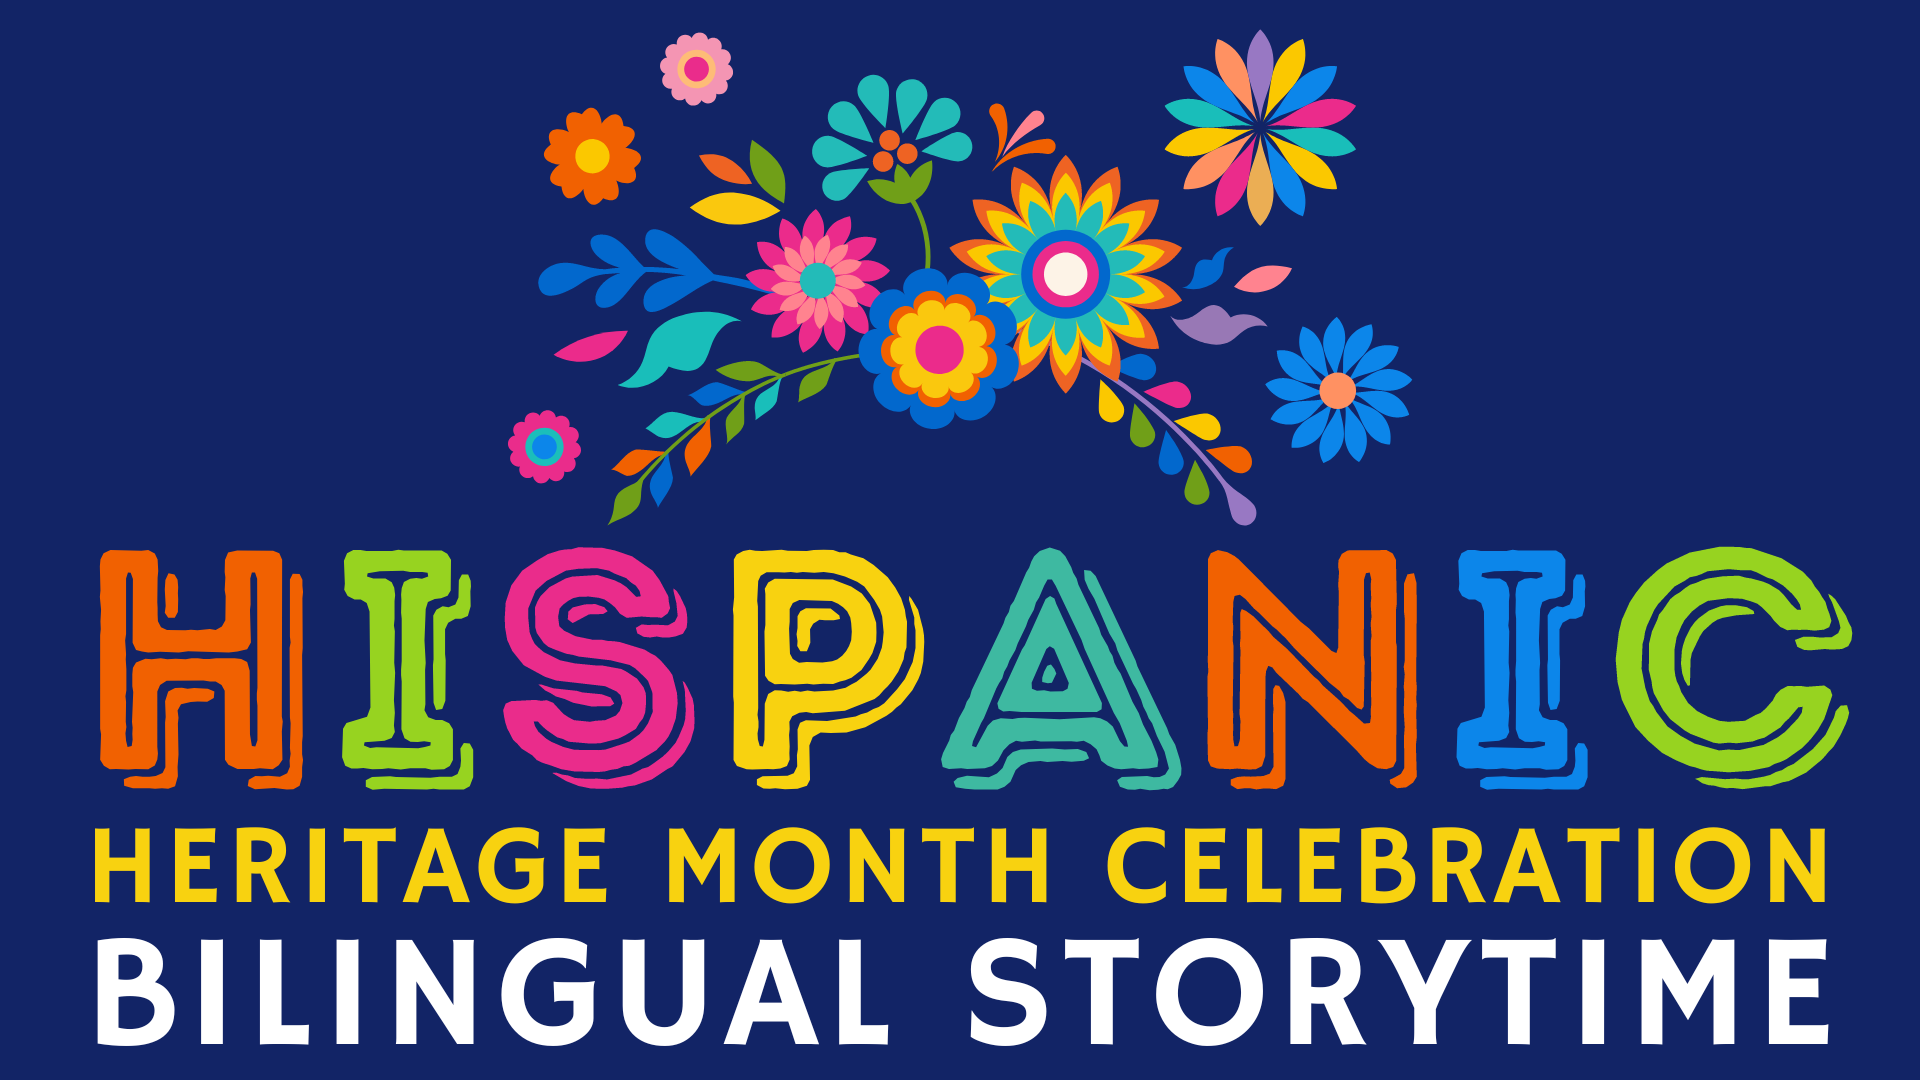 Hispanic Heritage Month Celebration Bilingual Storytime on dark blue background